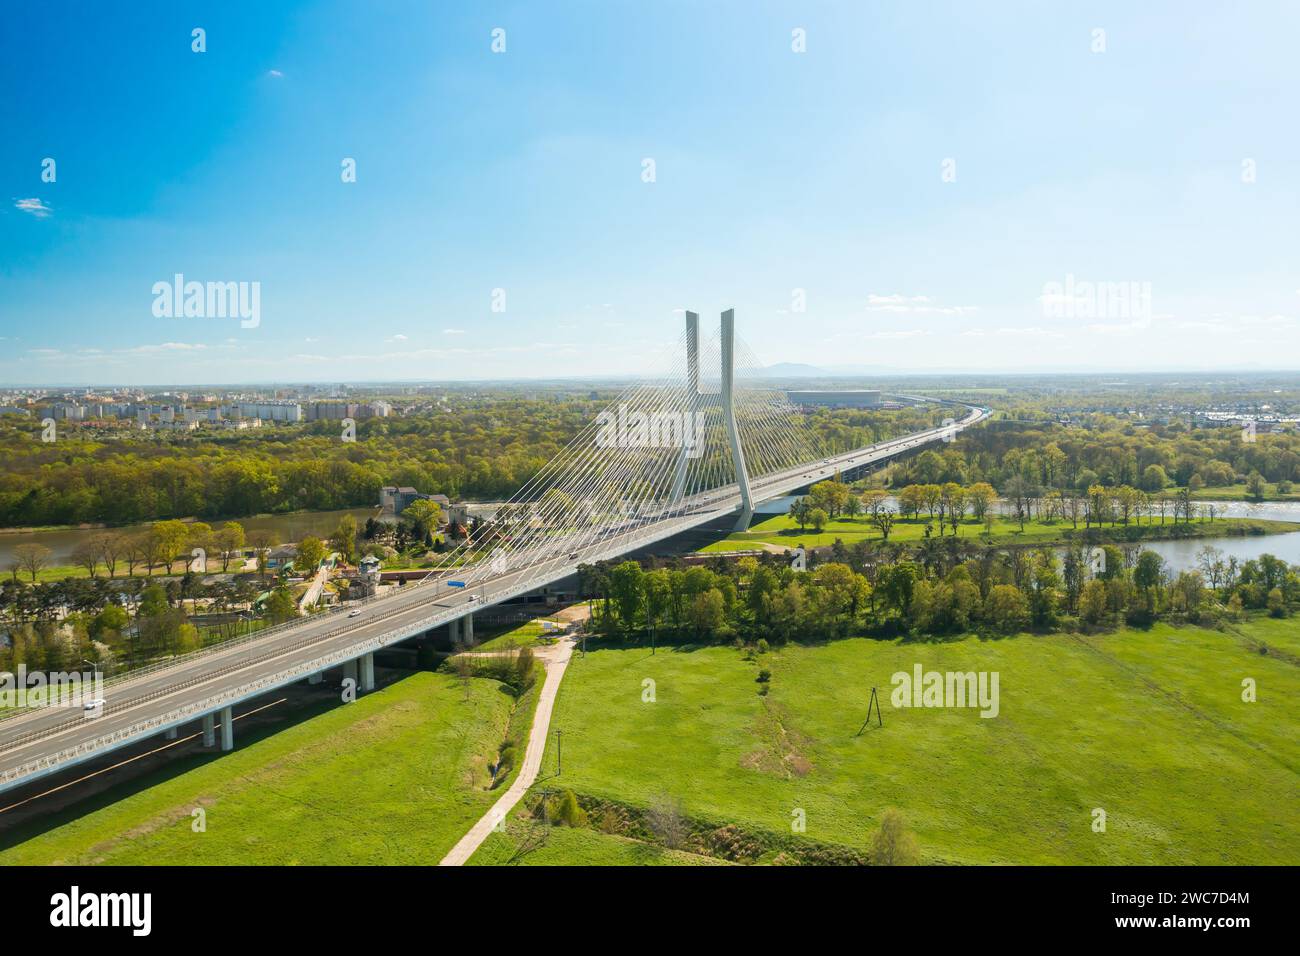 Famoso ponte Redzinski strallato su un fiume blu, tra lussureggianti foreste verdi. Natura panoramica e infrastrutture urbane vicino alla vista aerea di Breslavia Foto Stock